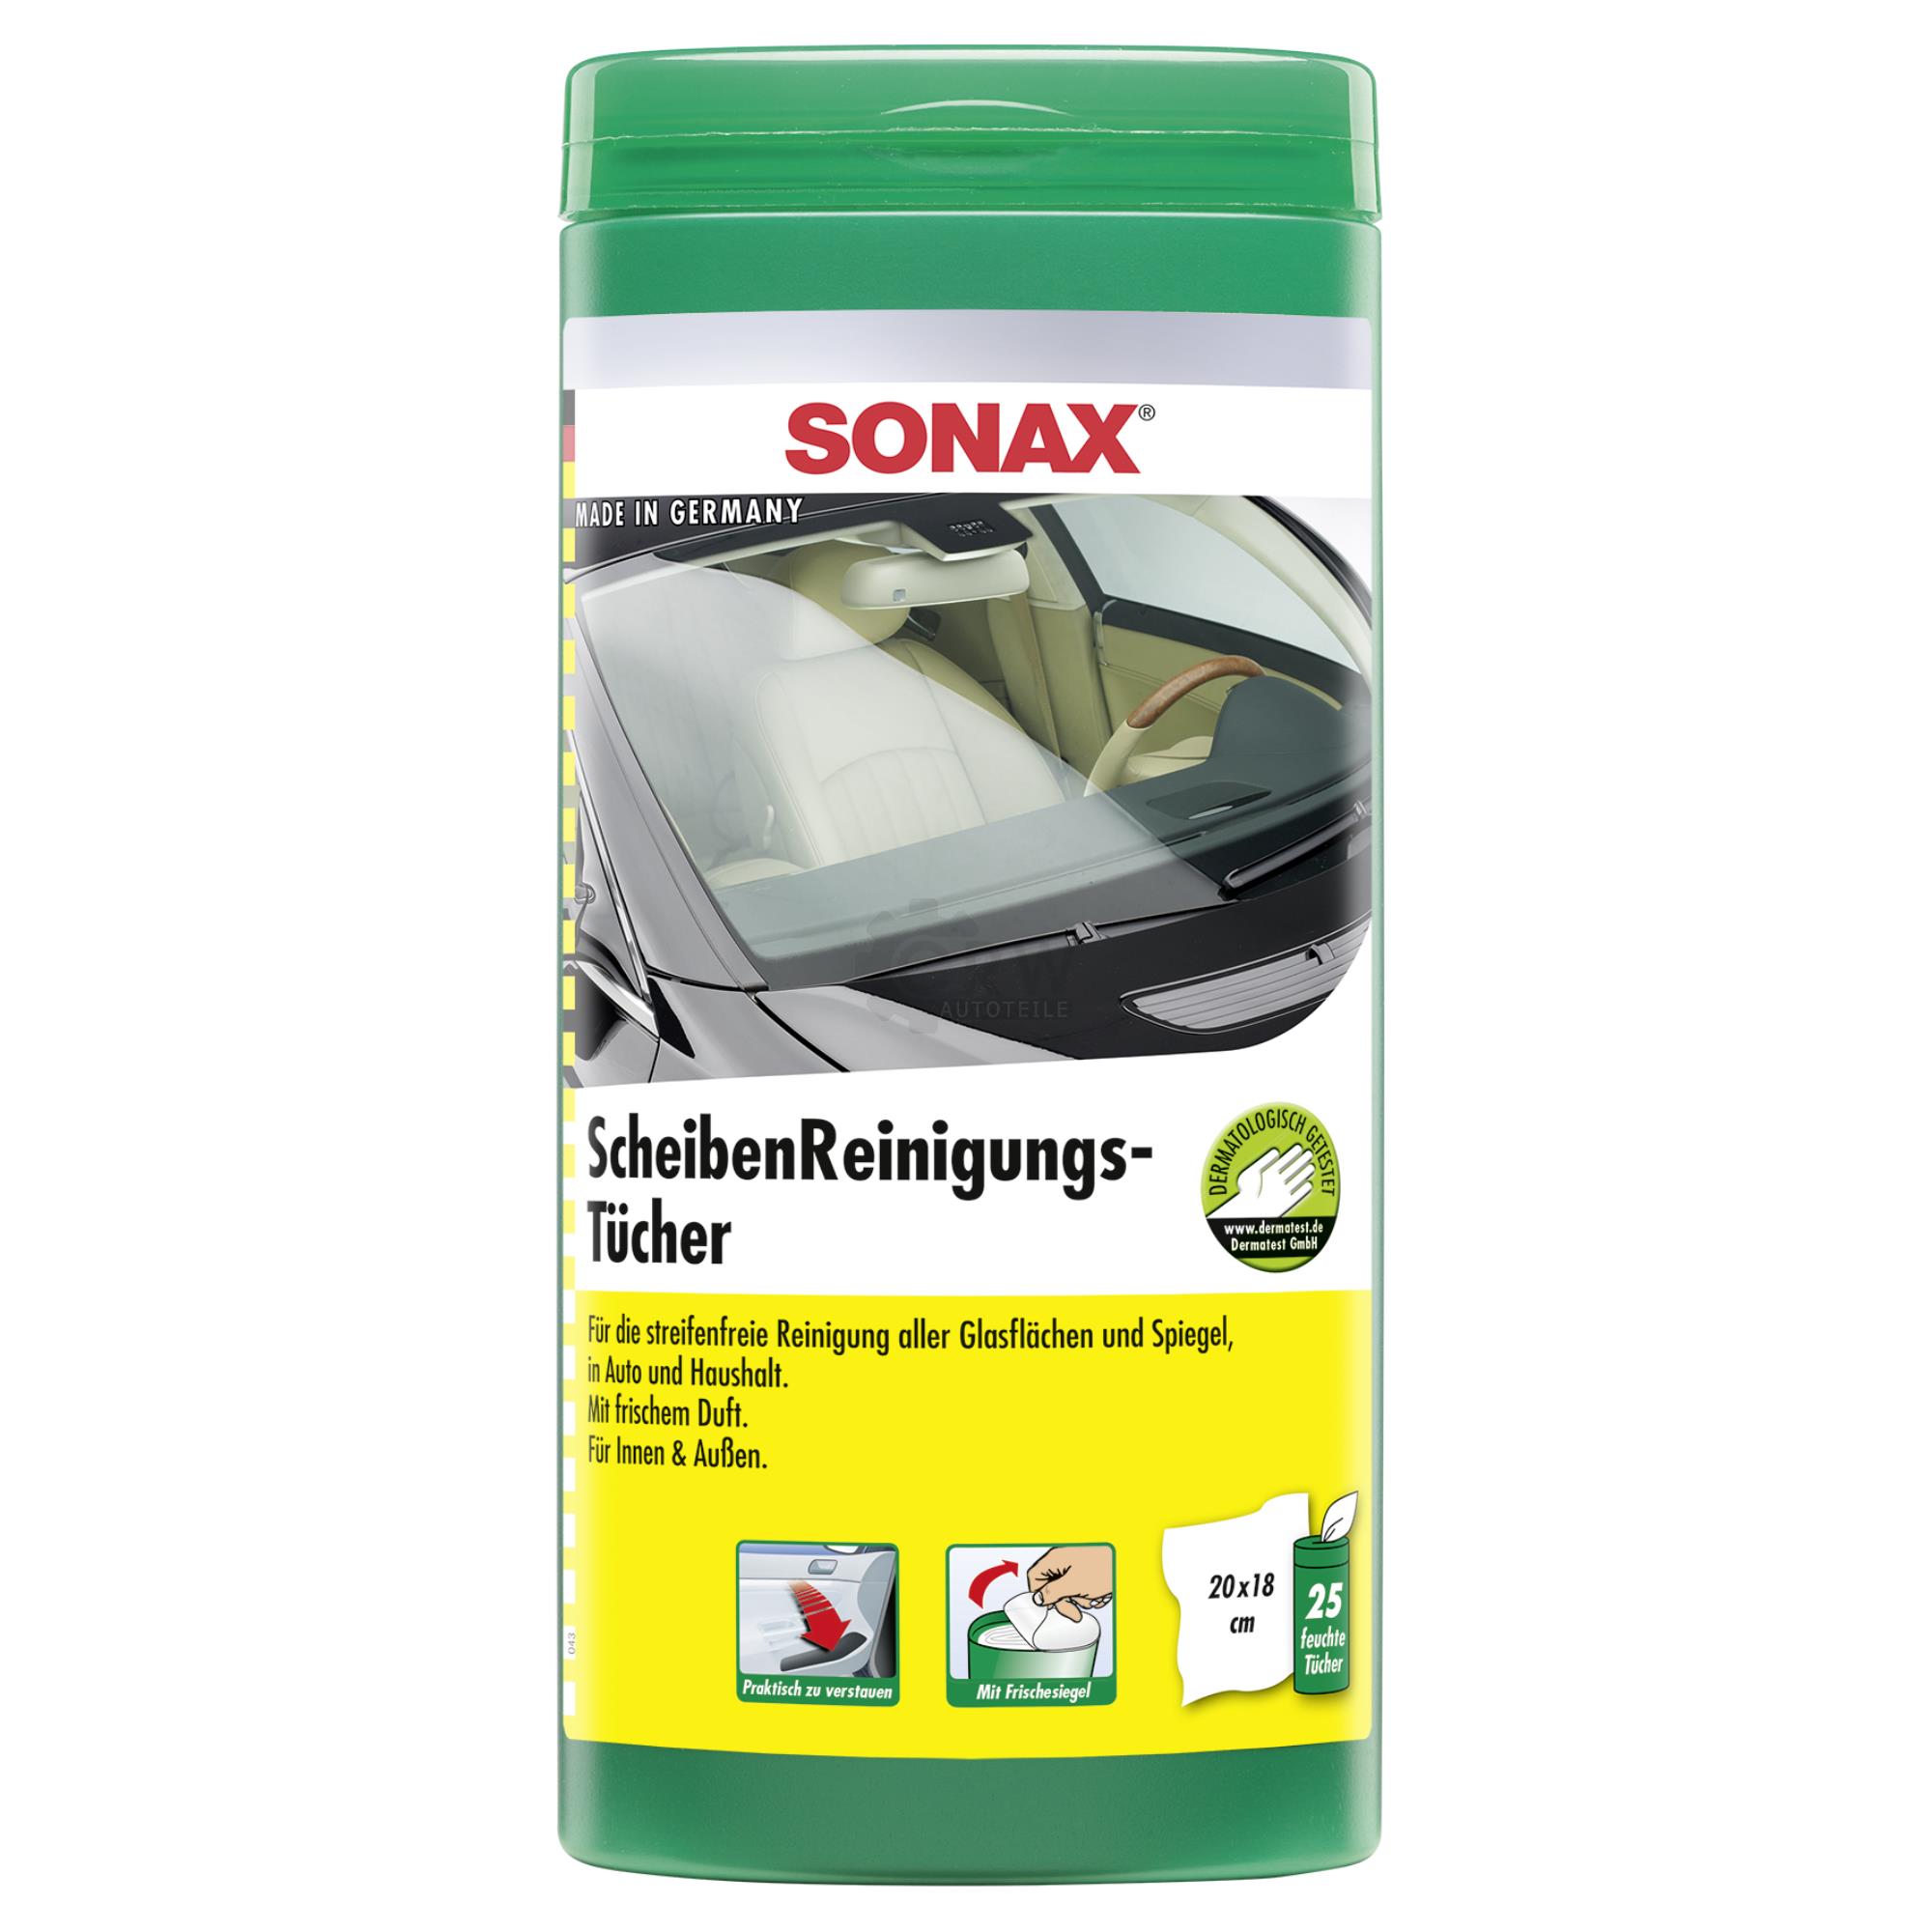 SONAX 04120000  ScheibenReinigungsTücher Box